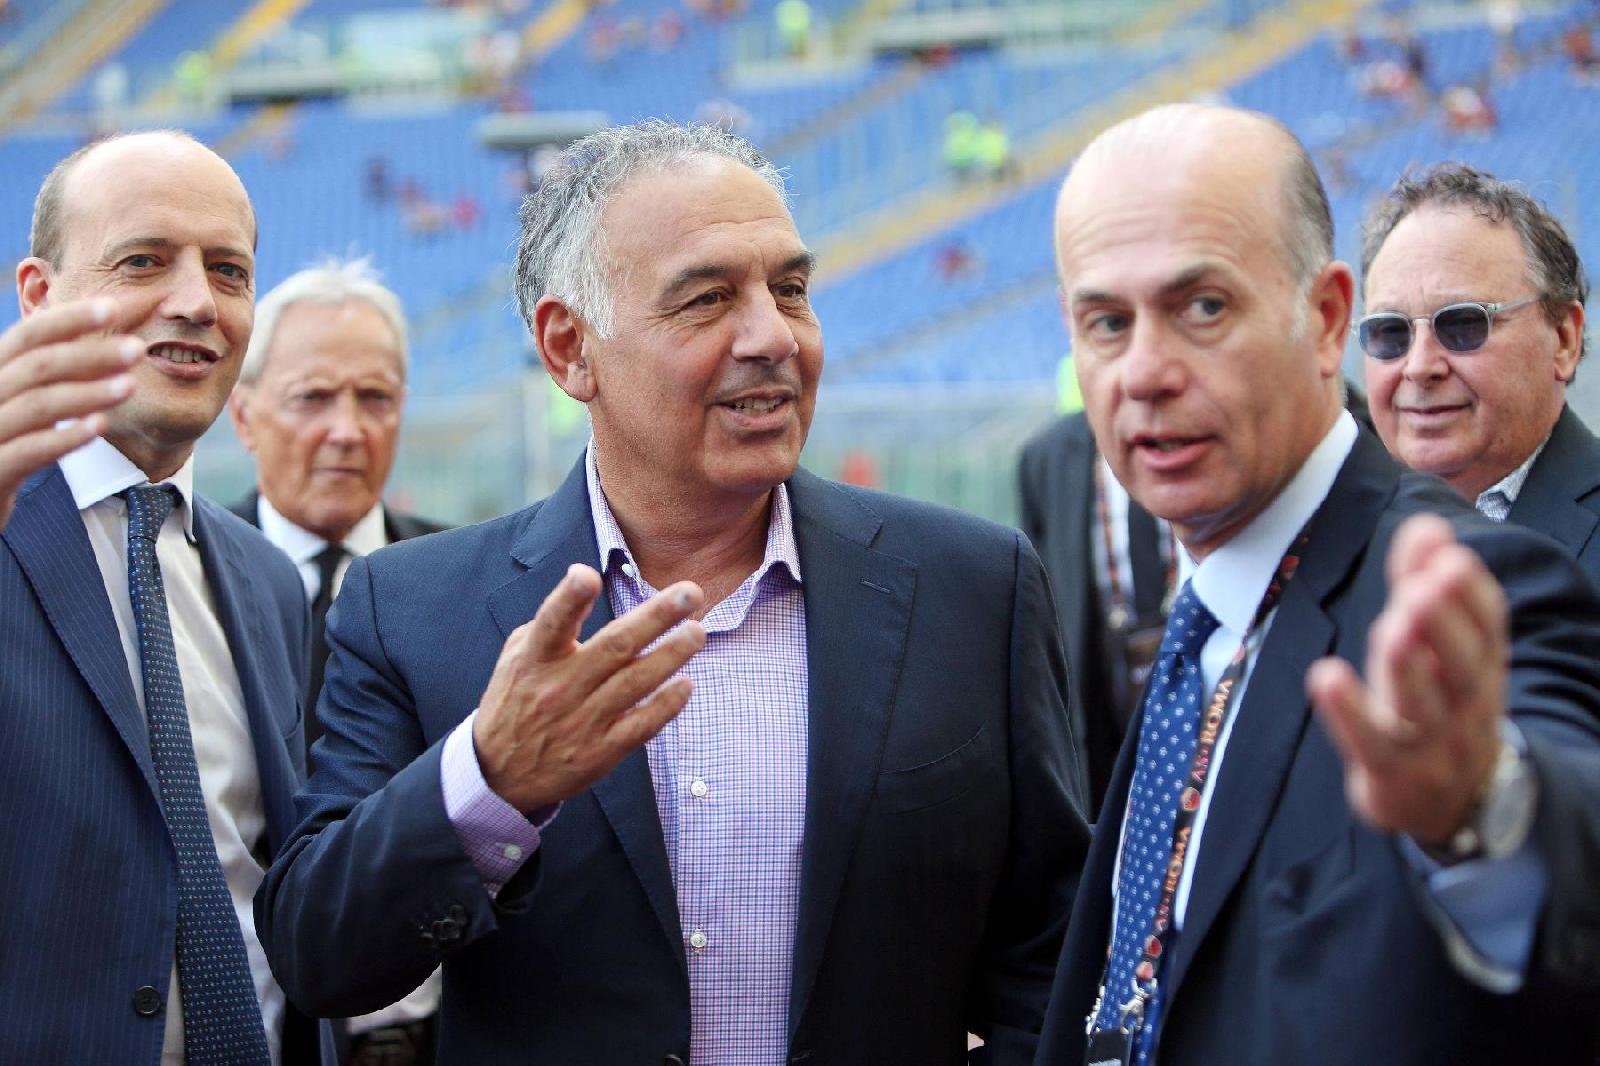 Fair play finanziario, il 9 febbraio Baldissoni e Gandini saranno ascoltati dalla Uefa